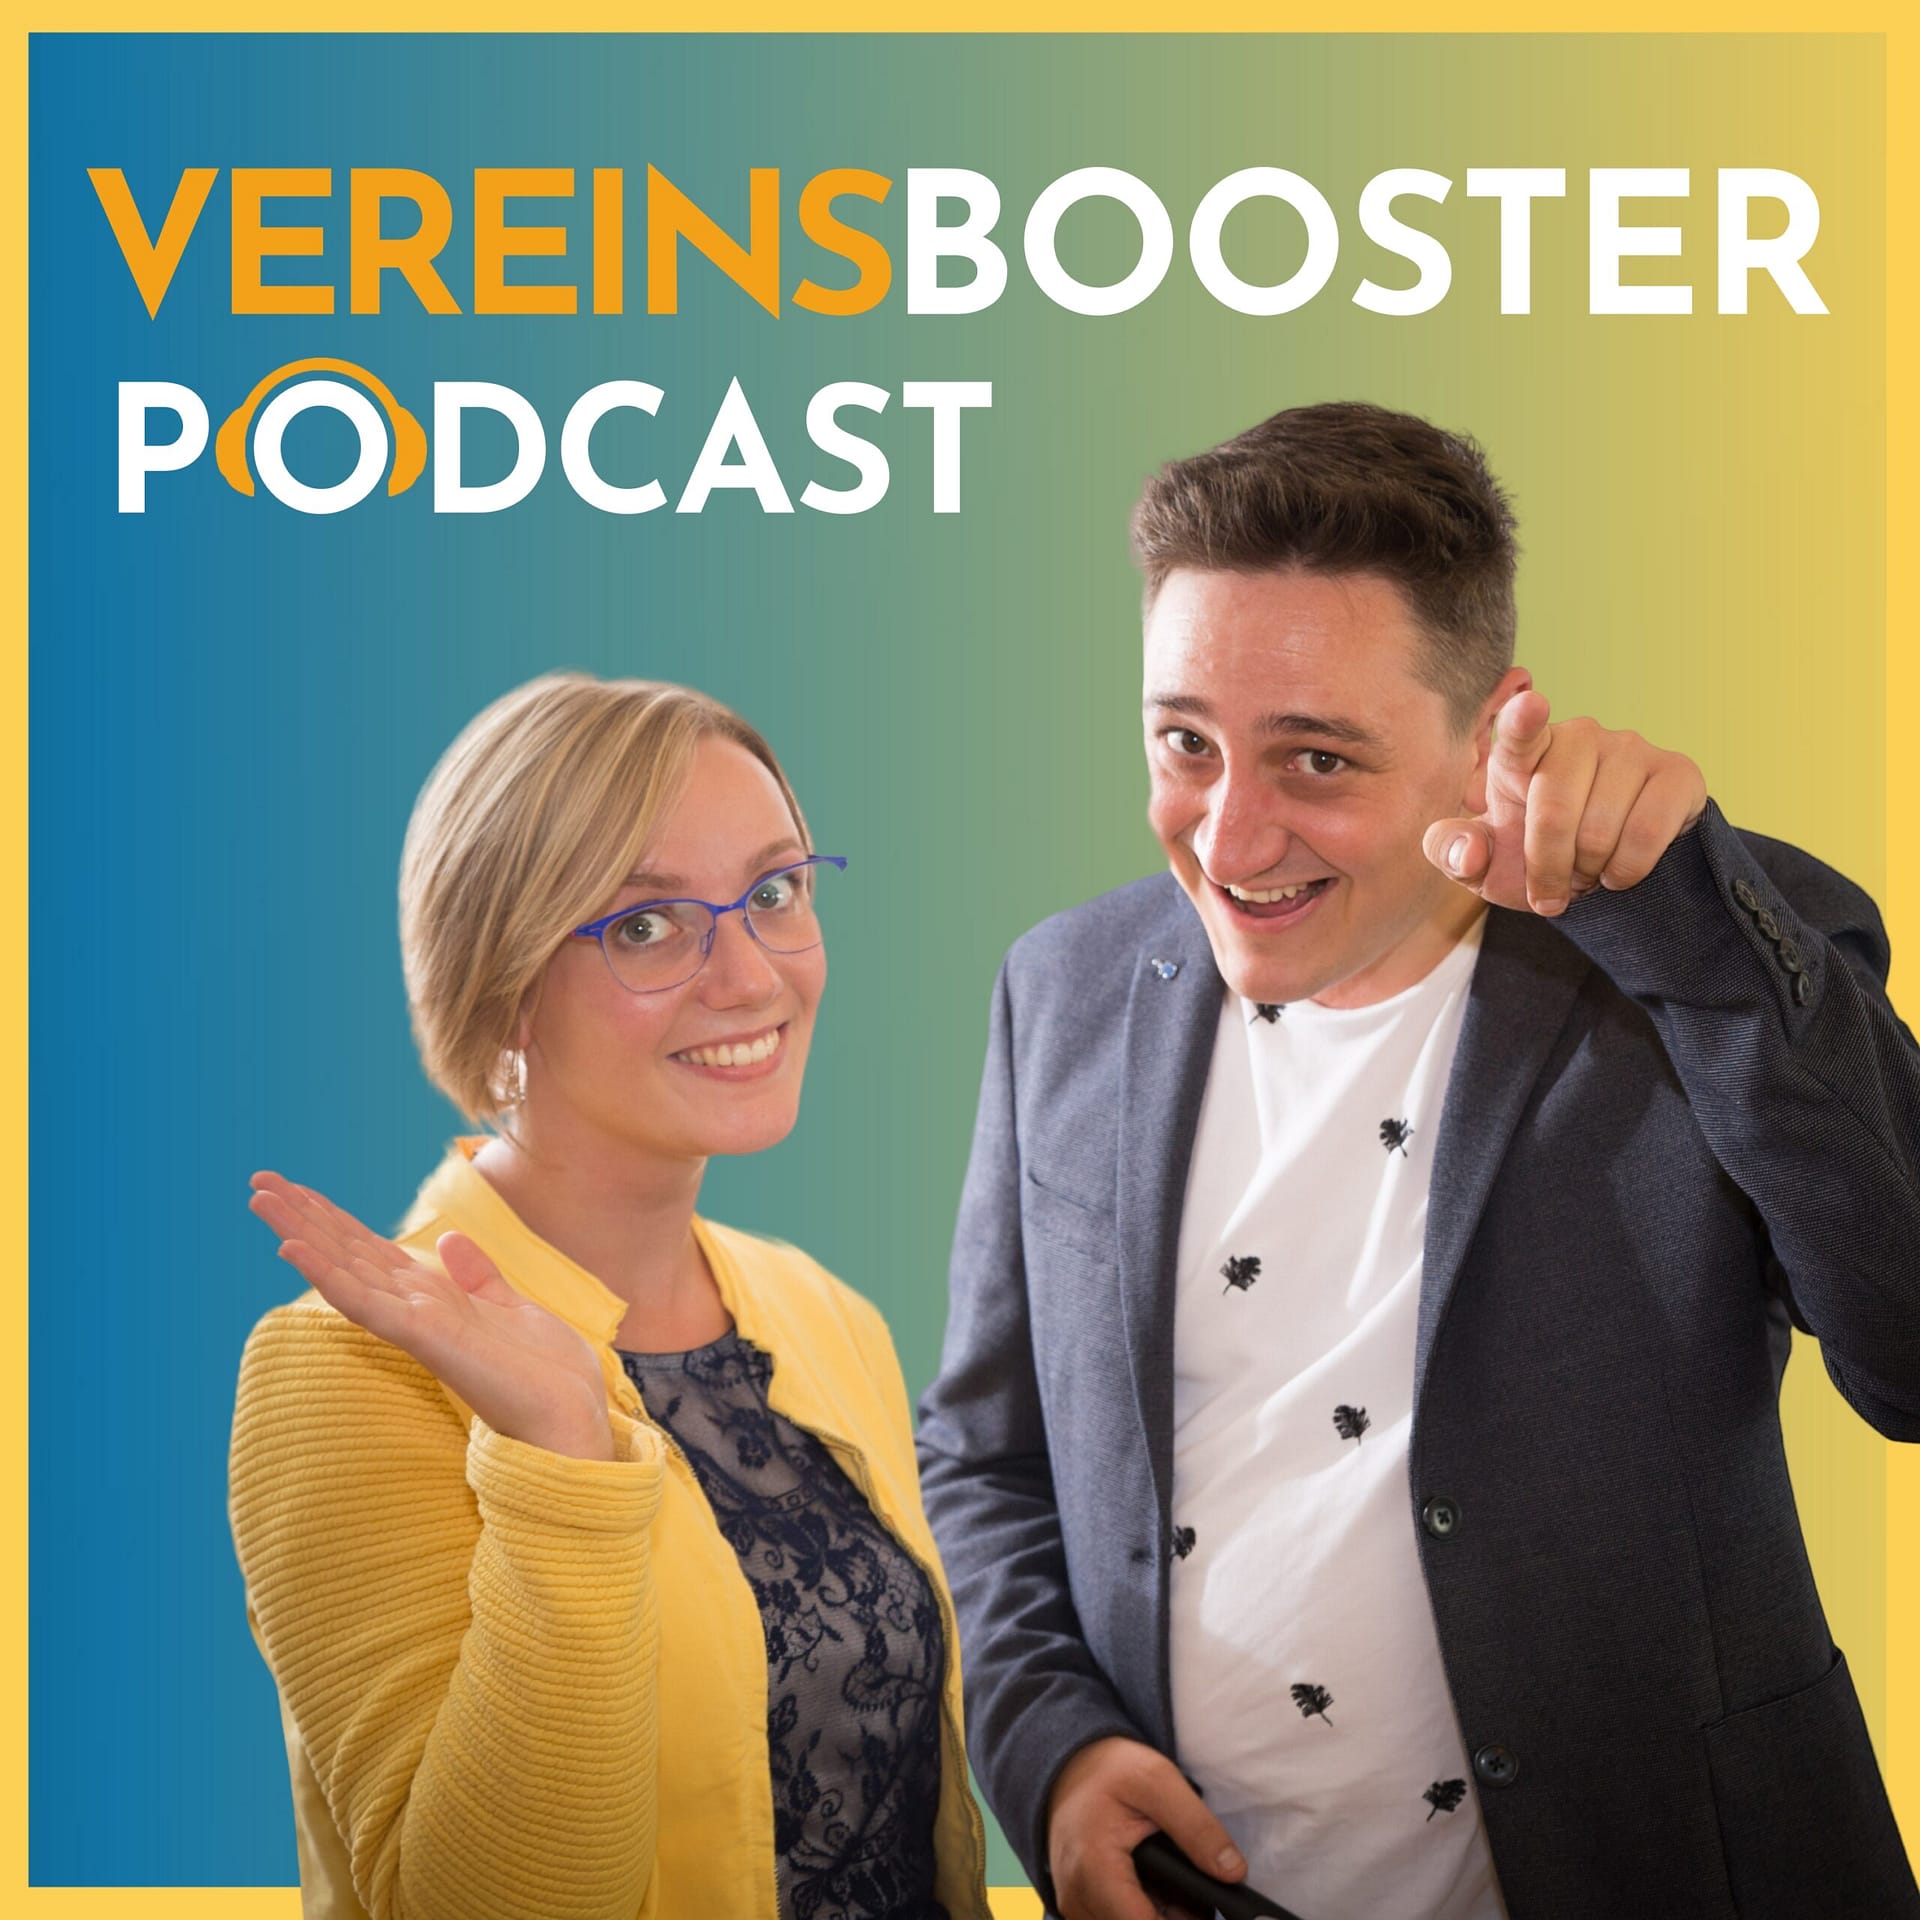 Warum Vereinsbooster? - Die Reise beginnt podcast vereinsbooster cover 2023 highresolution scaled